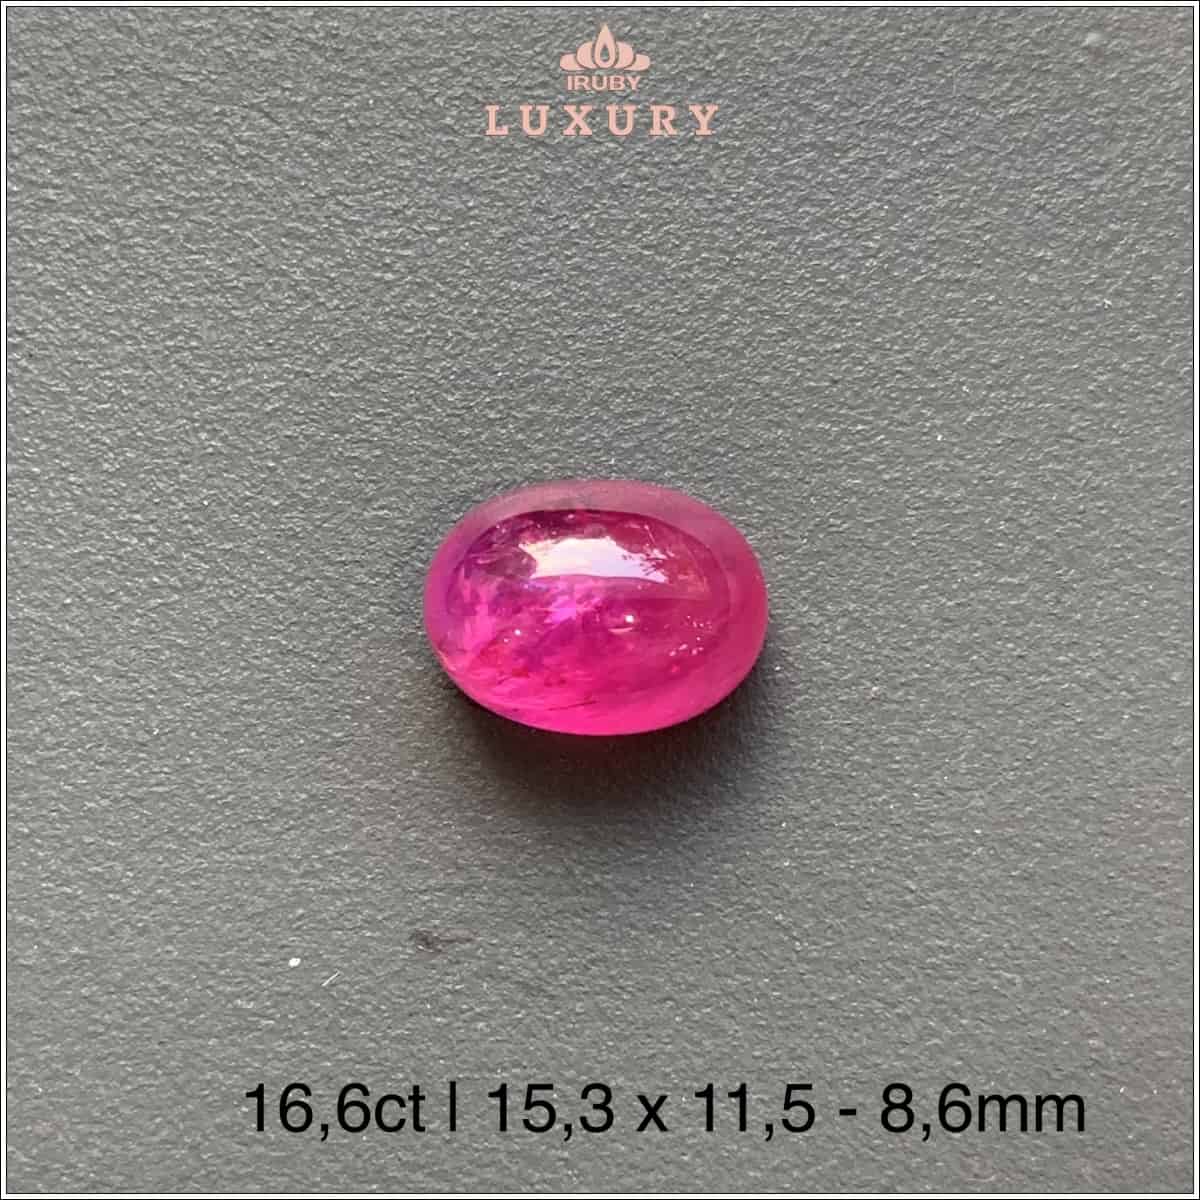 Viên Ruby hồng ngọc chất kính trong 16,6ct - IRRC180 2312166 viên đá chủ của thiết kế mẫu nhẫn Doanh Nhân